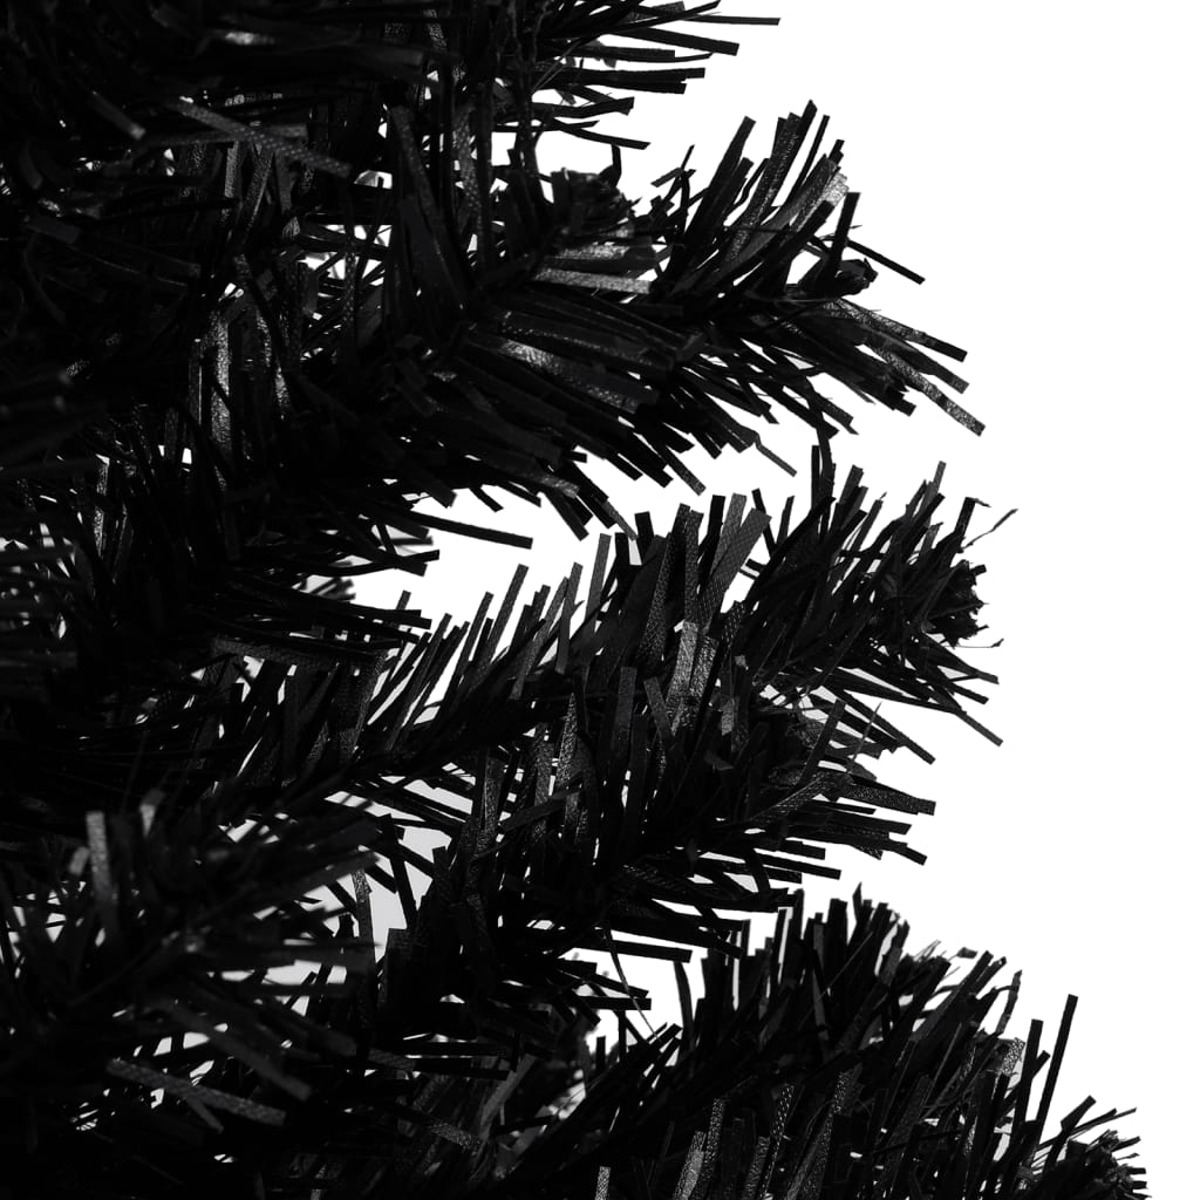 VIDAXL Weihnachtsbaum 3077588